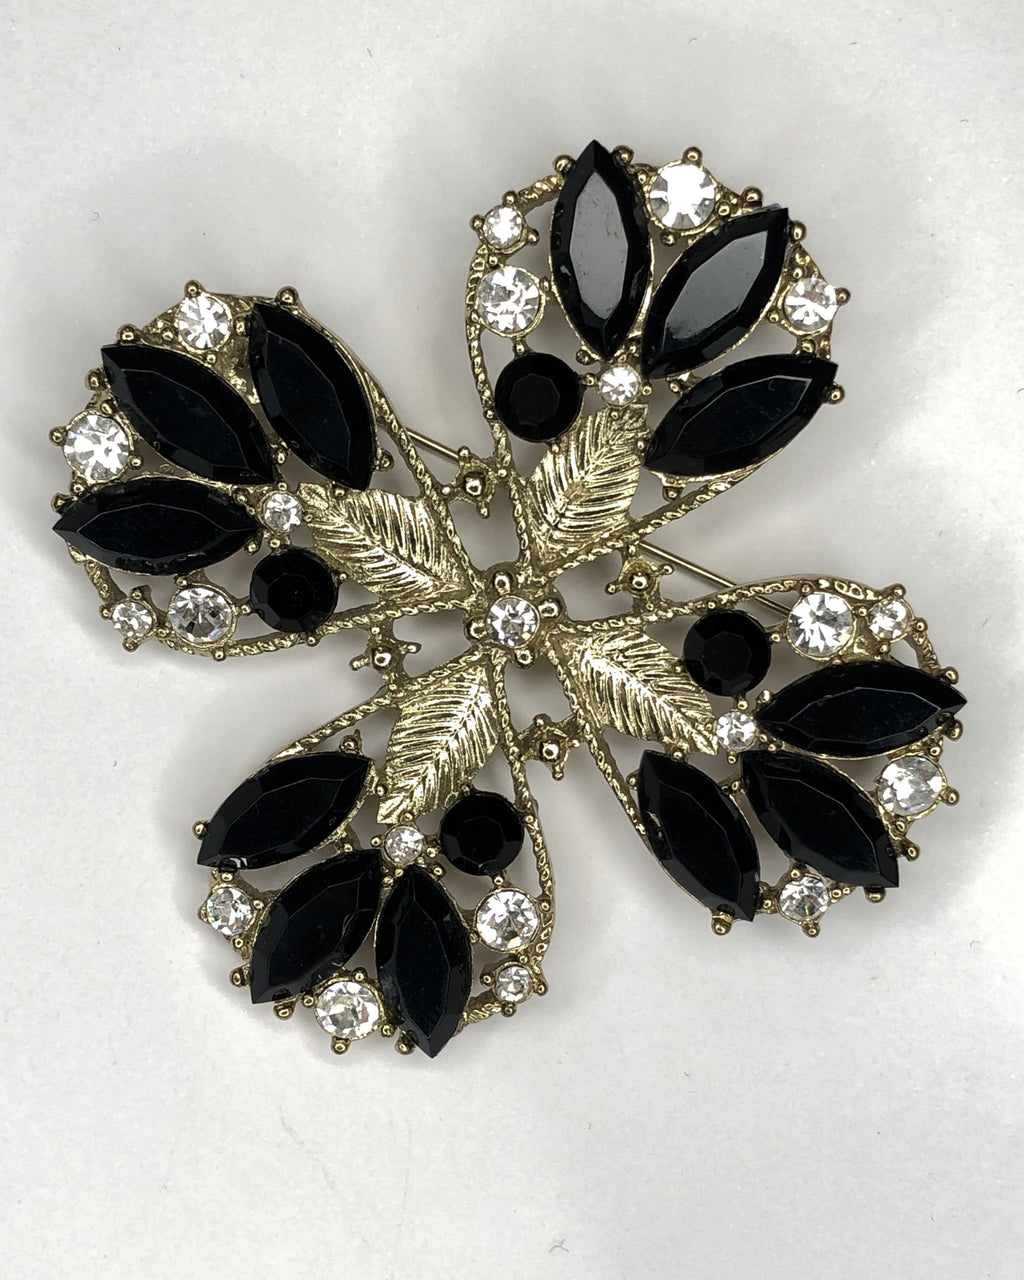 Gold & black 4-leaf clover design brooch at erika